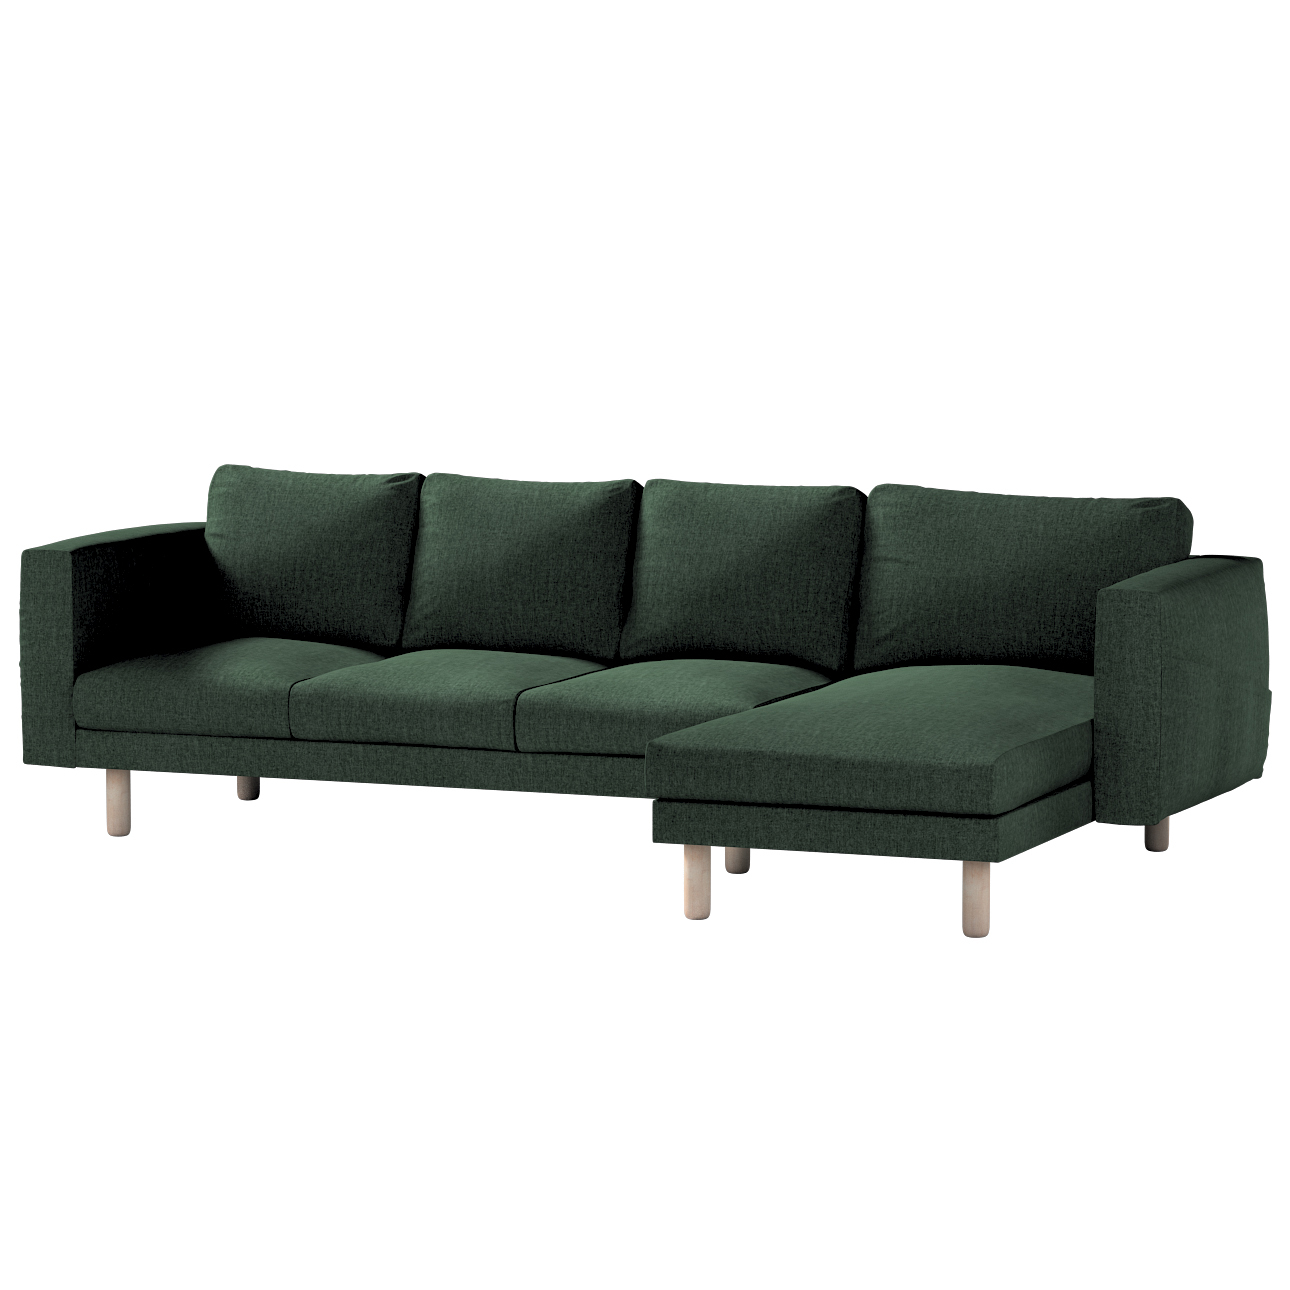 Bezug für Norsborg 4-Sitzer Sofa mit Recamiere, dunkelgrün, Norsborg Bezug günstig online kaufen